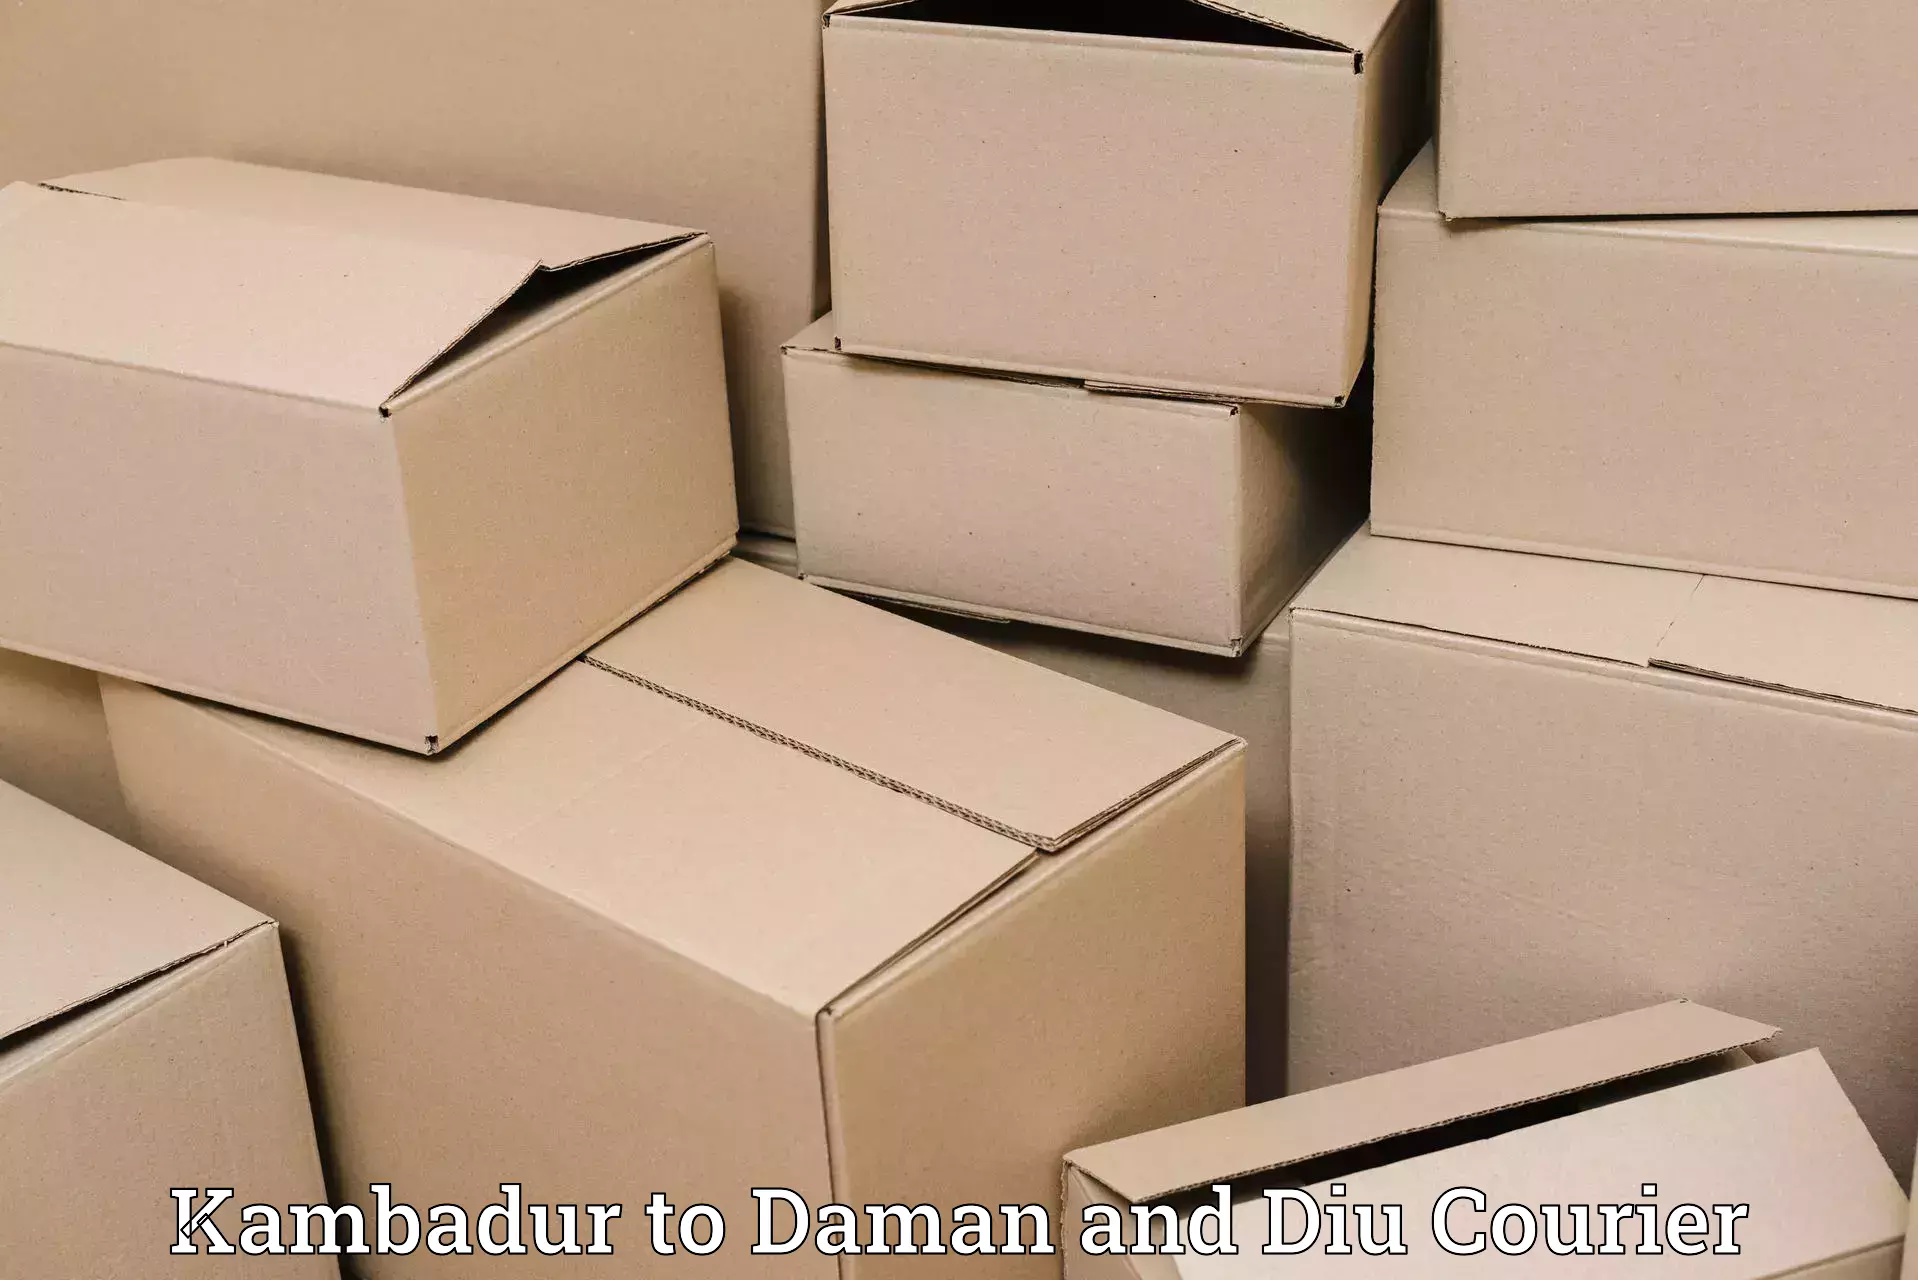 Tailored freight services Kambadur to Diu